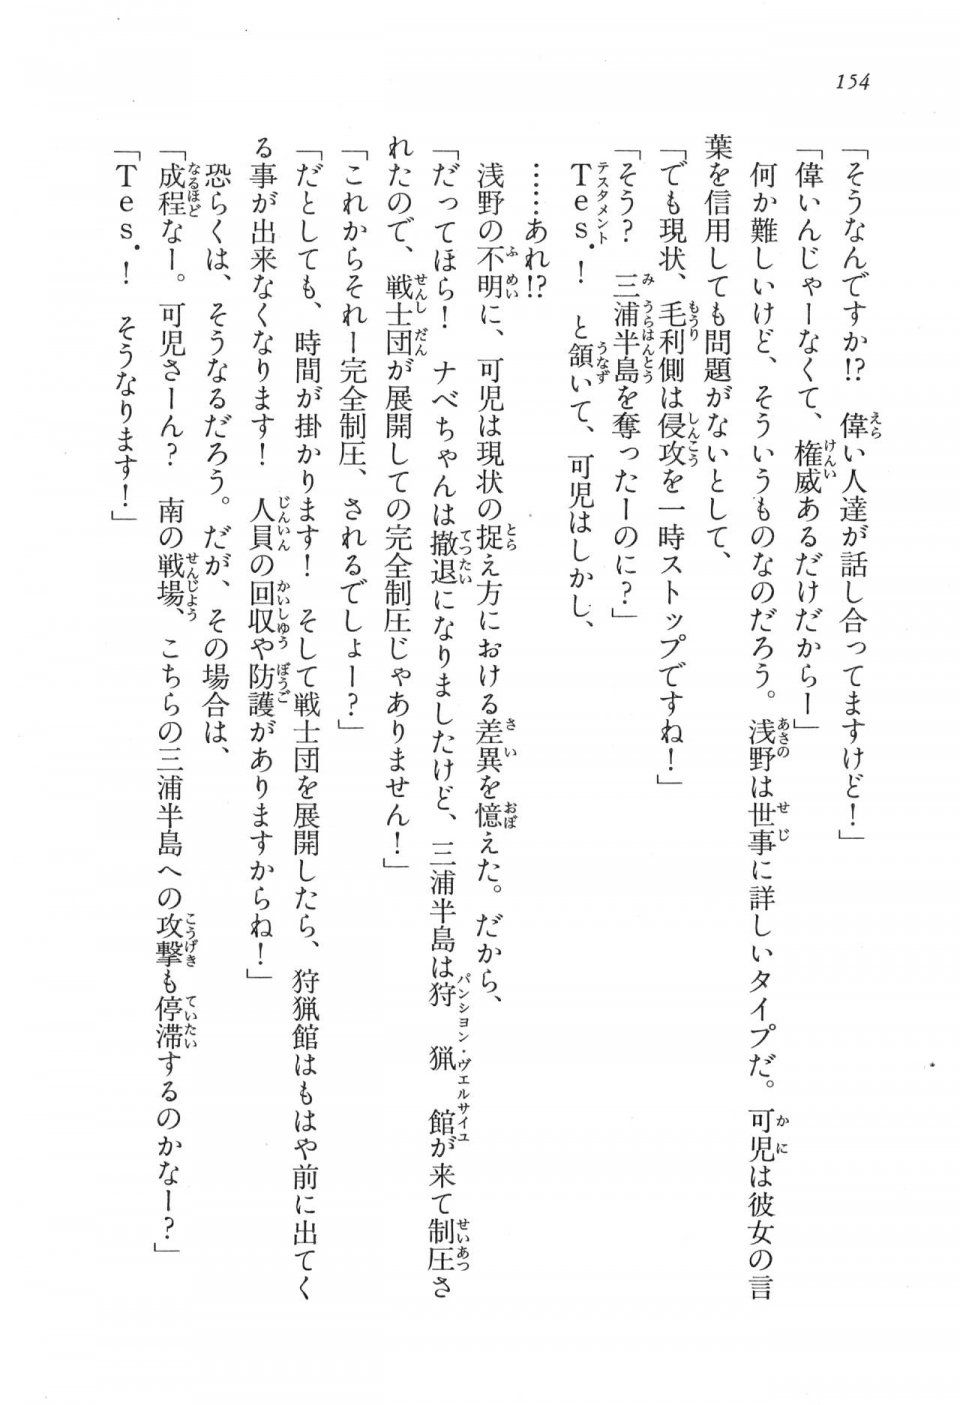 Kyoukai Senjou no Horizon LN Vol 17(7B) - Photo #154